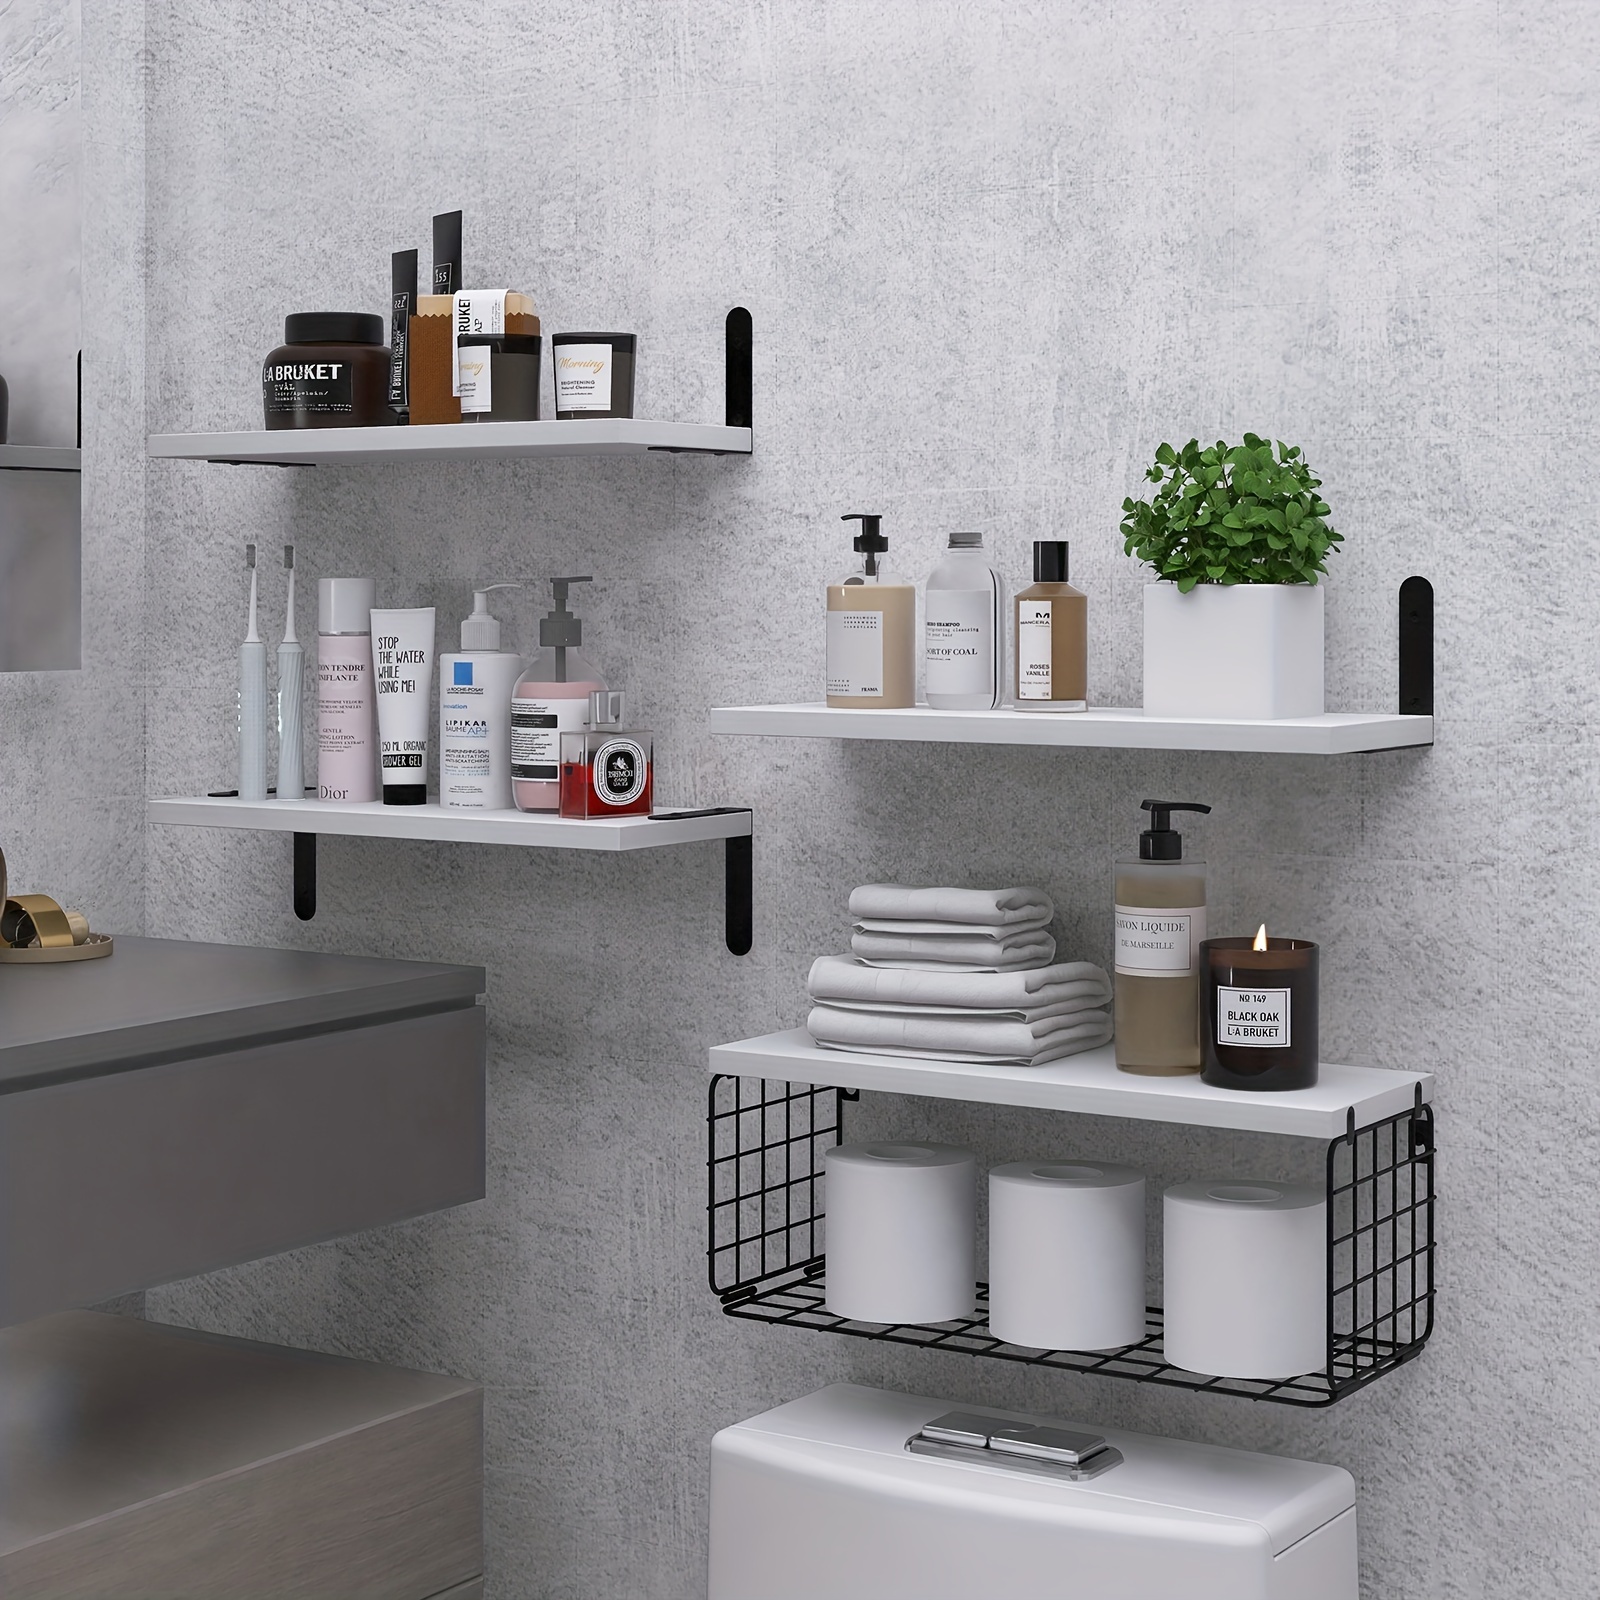 Black Floating Shelves for Wall, Bathrom Shelves Over Toilet Wall